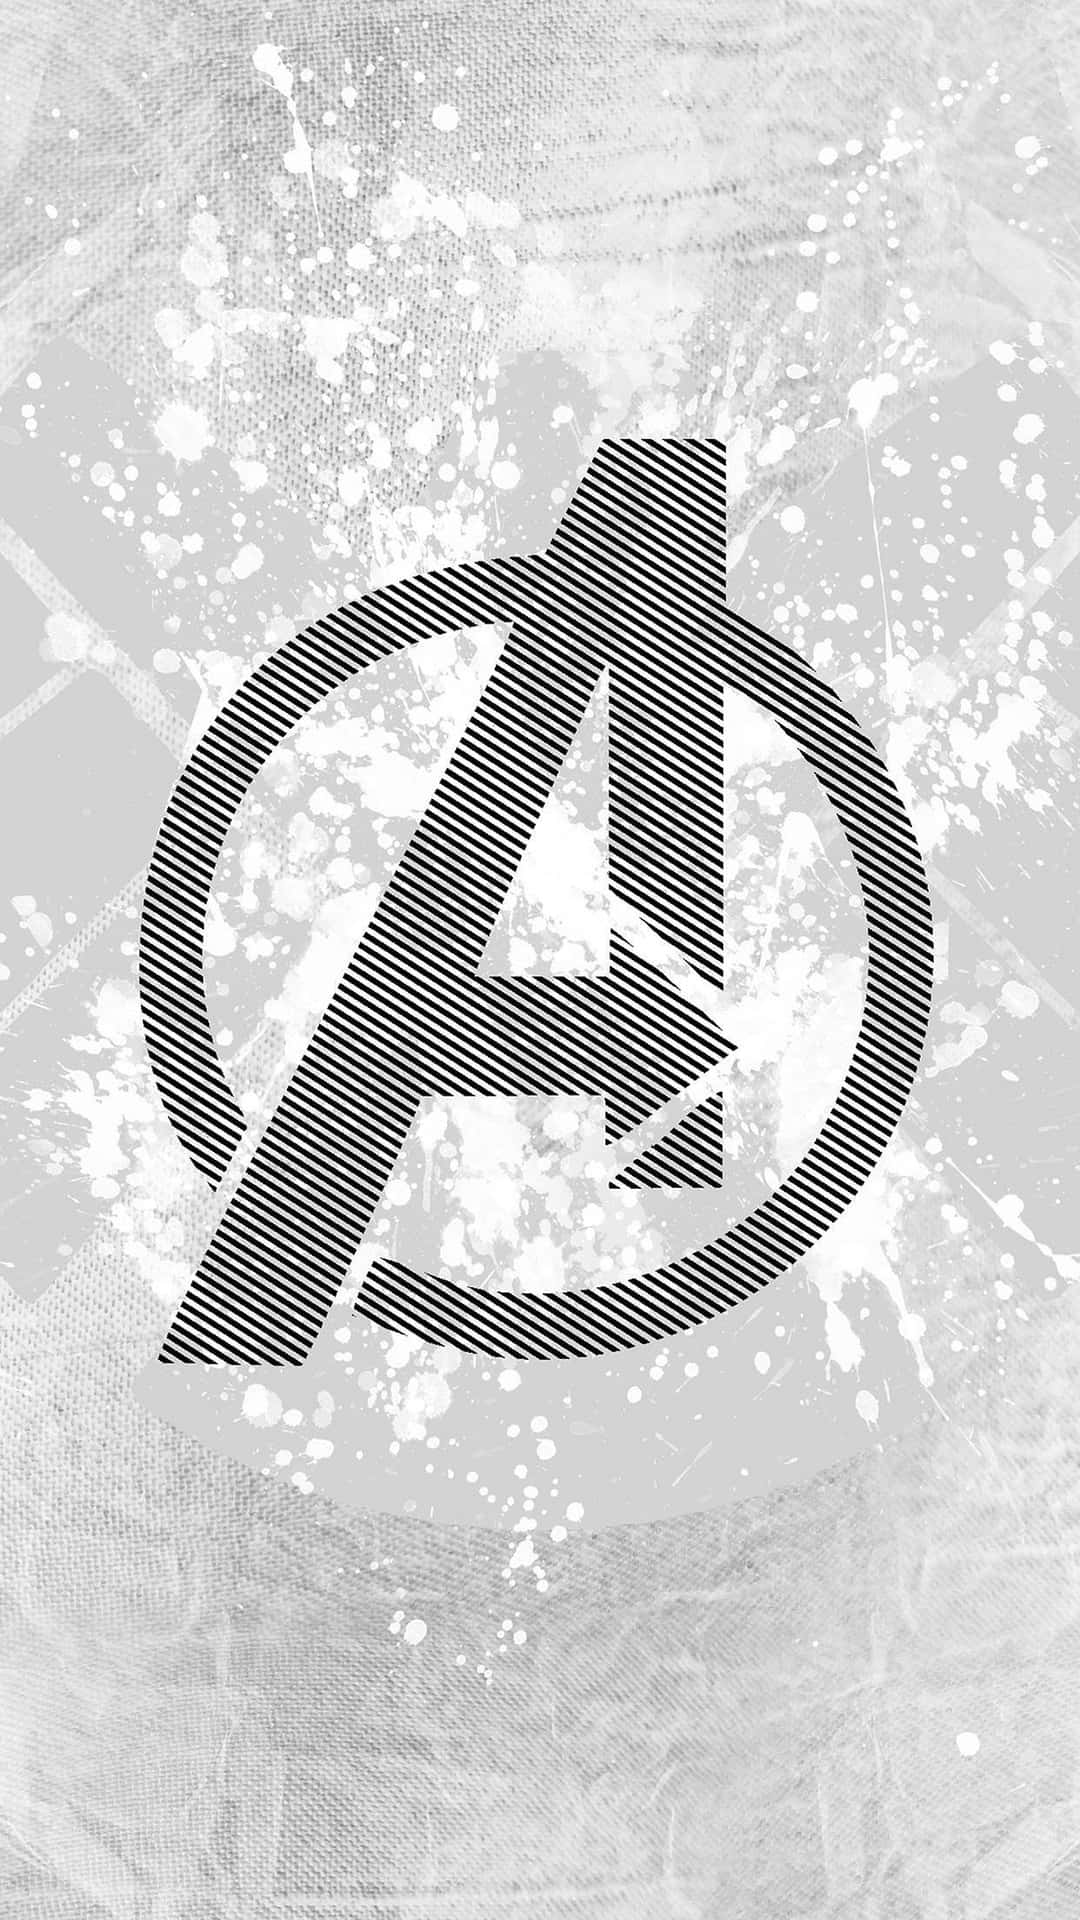 Marvel Black And White Avengers Logo Wallpaper